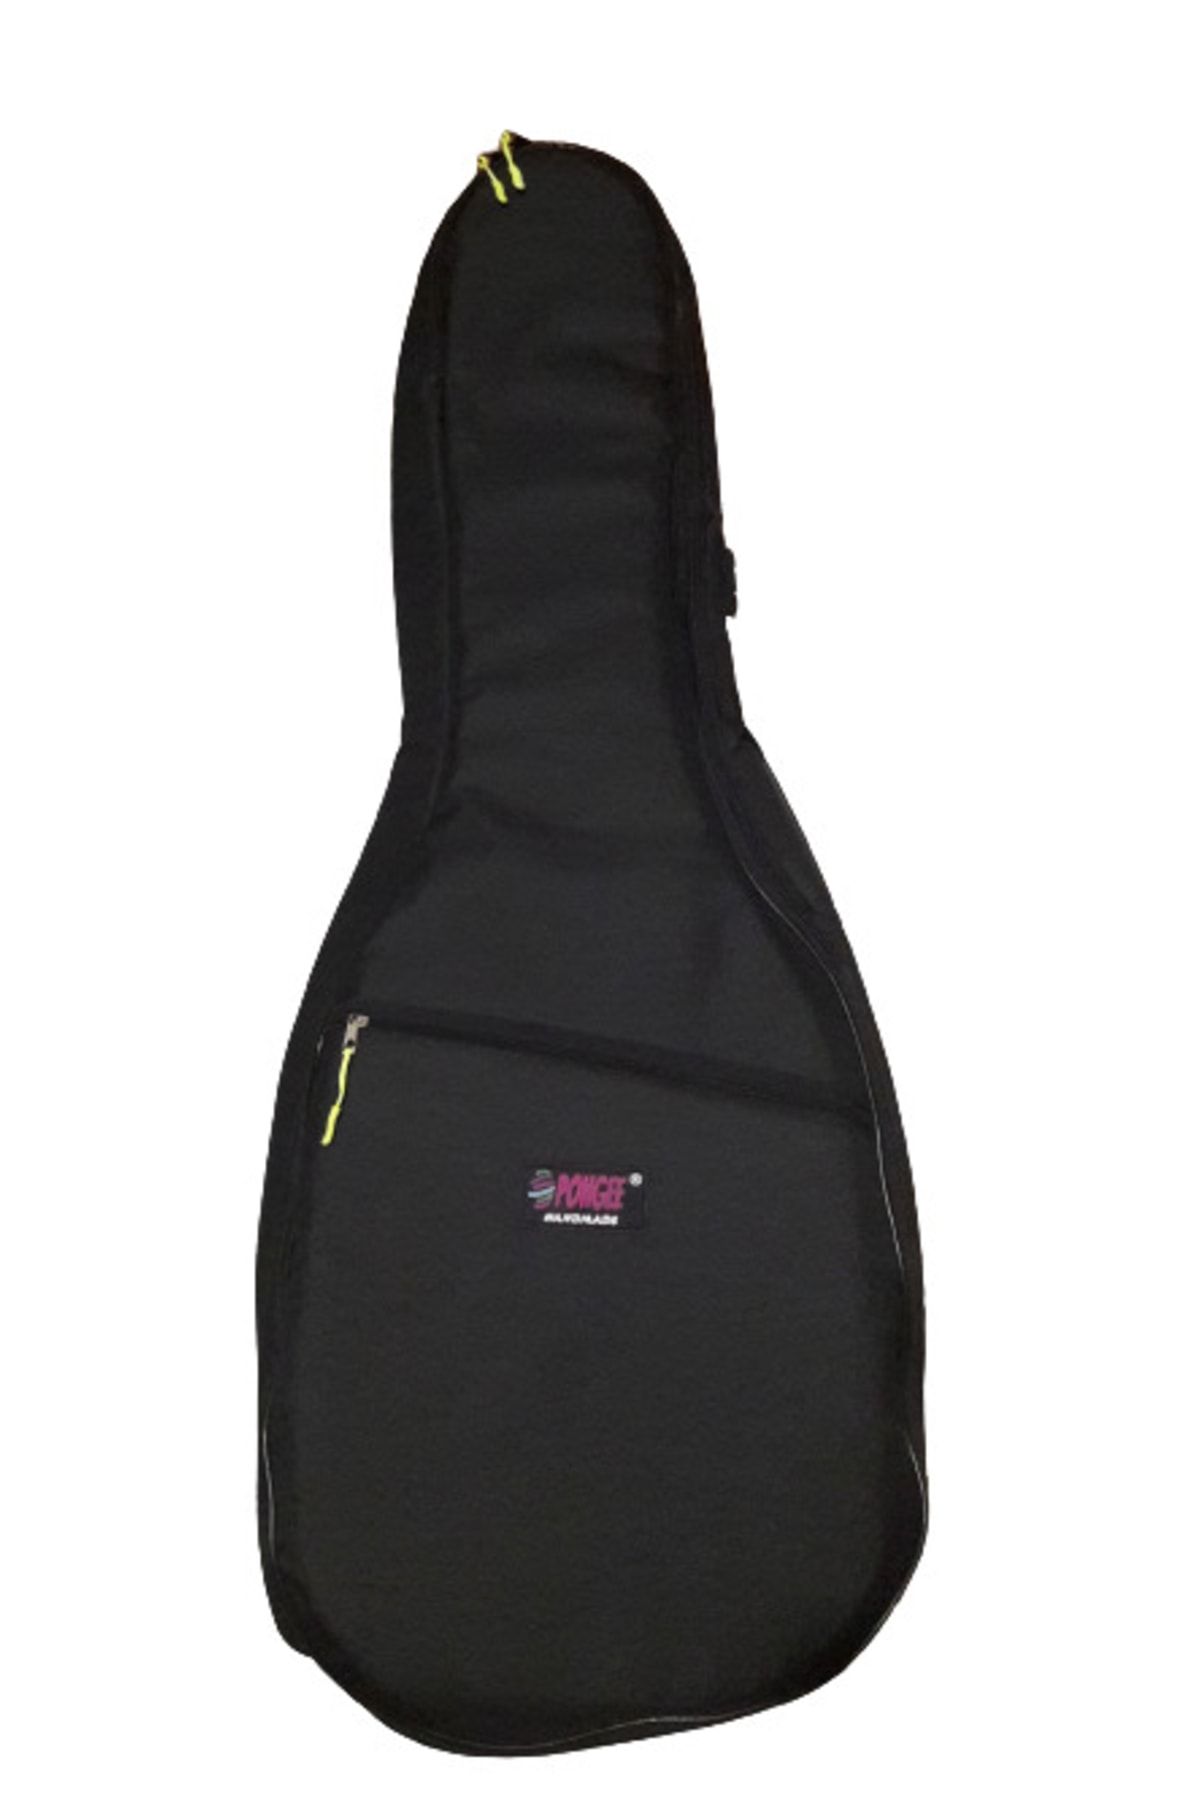 PONGEE Klasik Soft Case Gitar Kılıfı Su Geçirmez 110x40x10 Cm